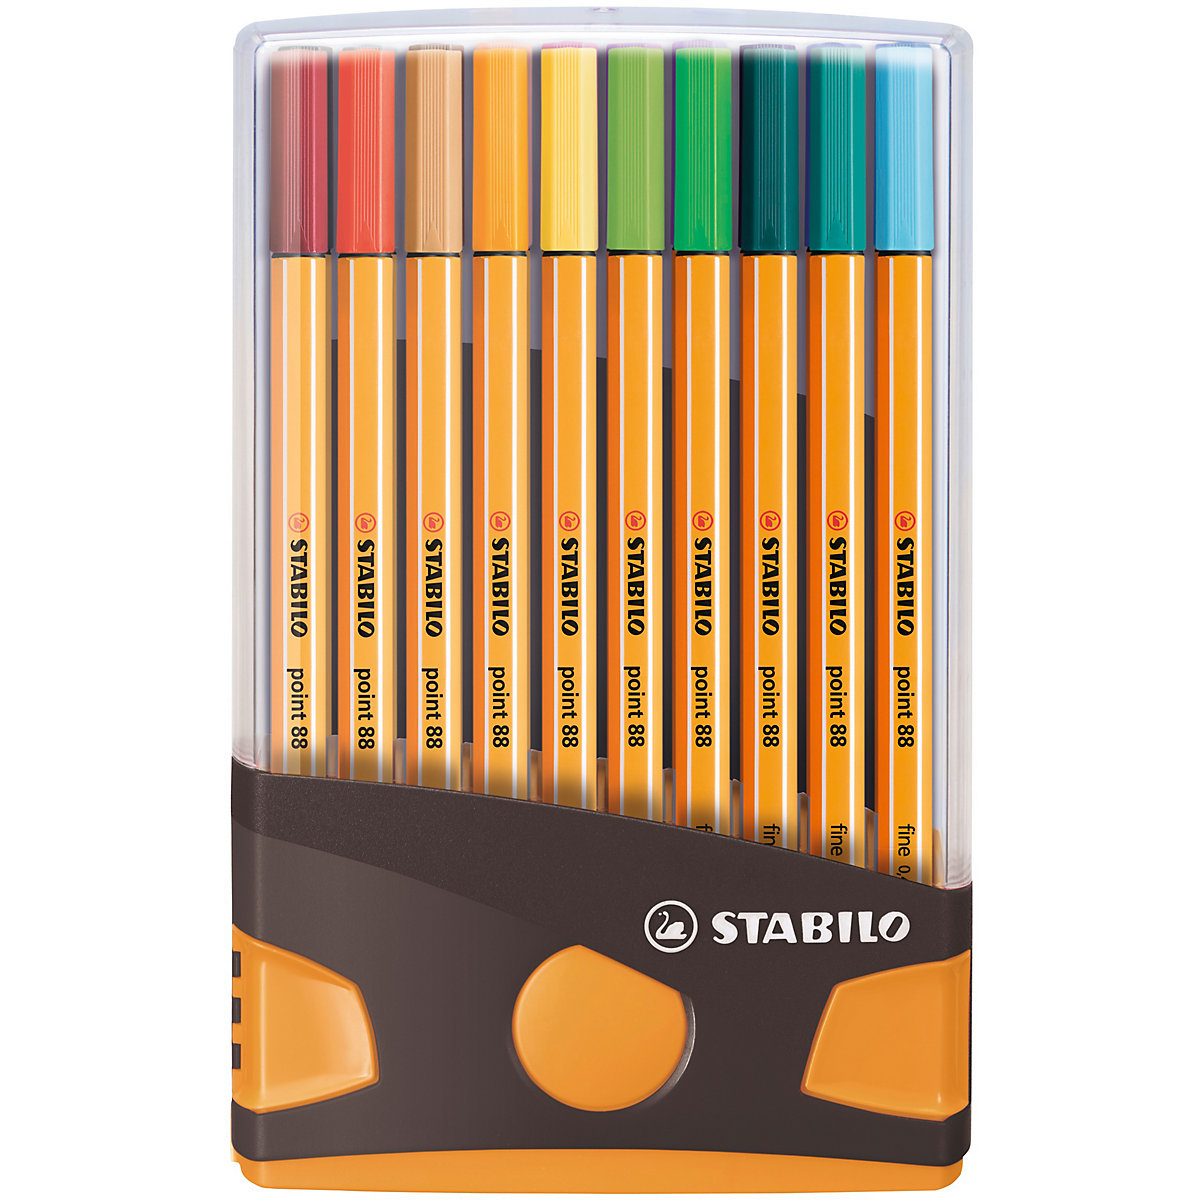 STABILO Fineliner point 88 20 Farben im Color Parade Tischset braun/orange